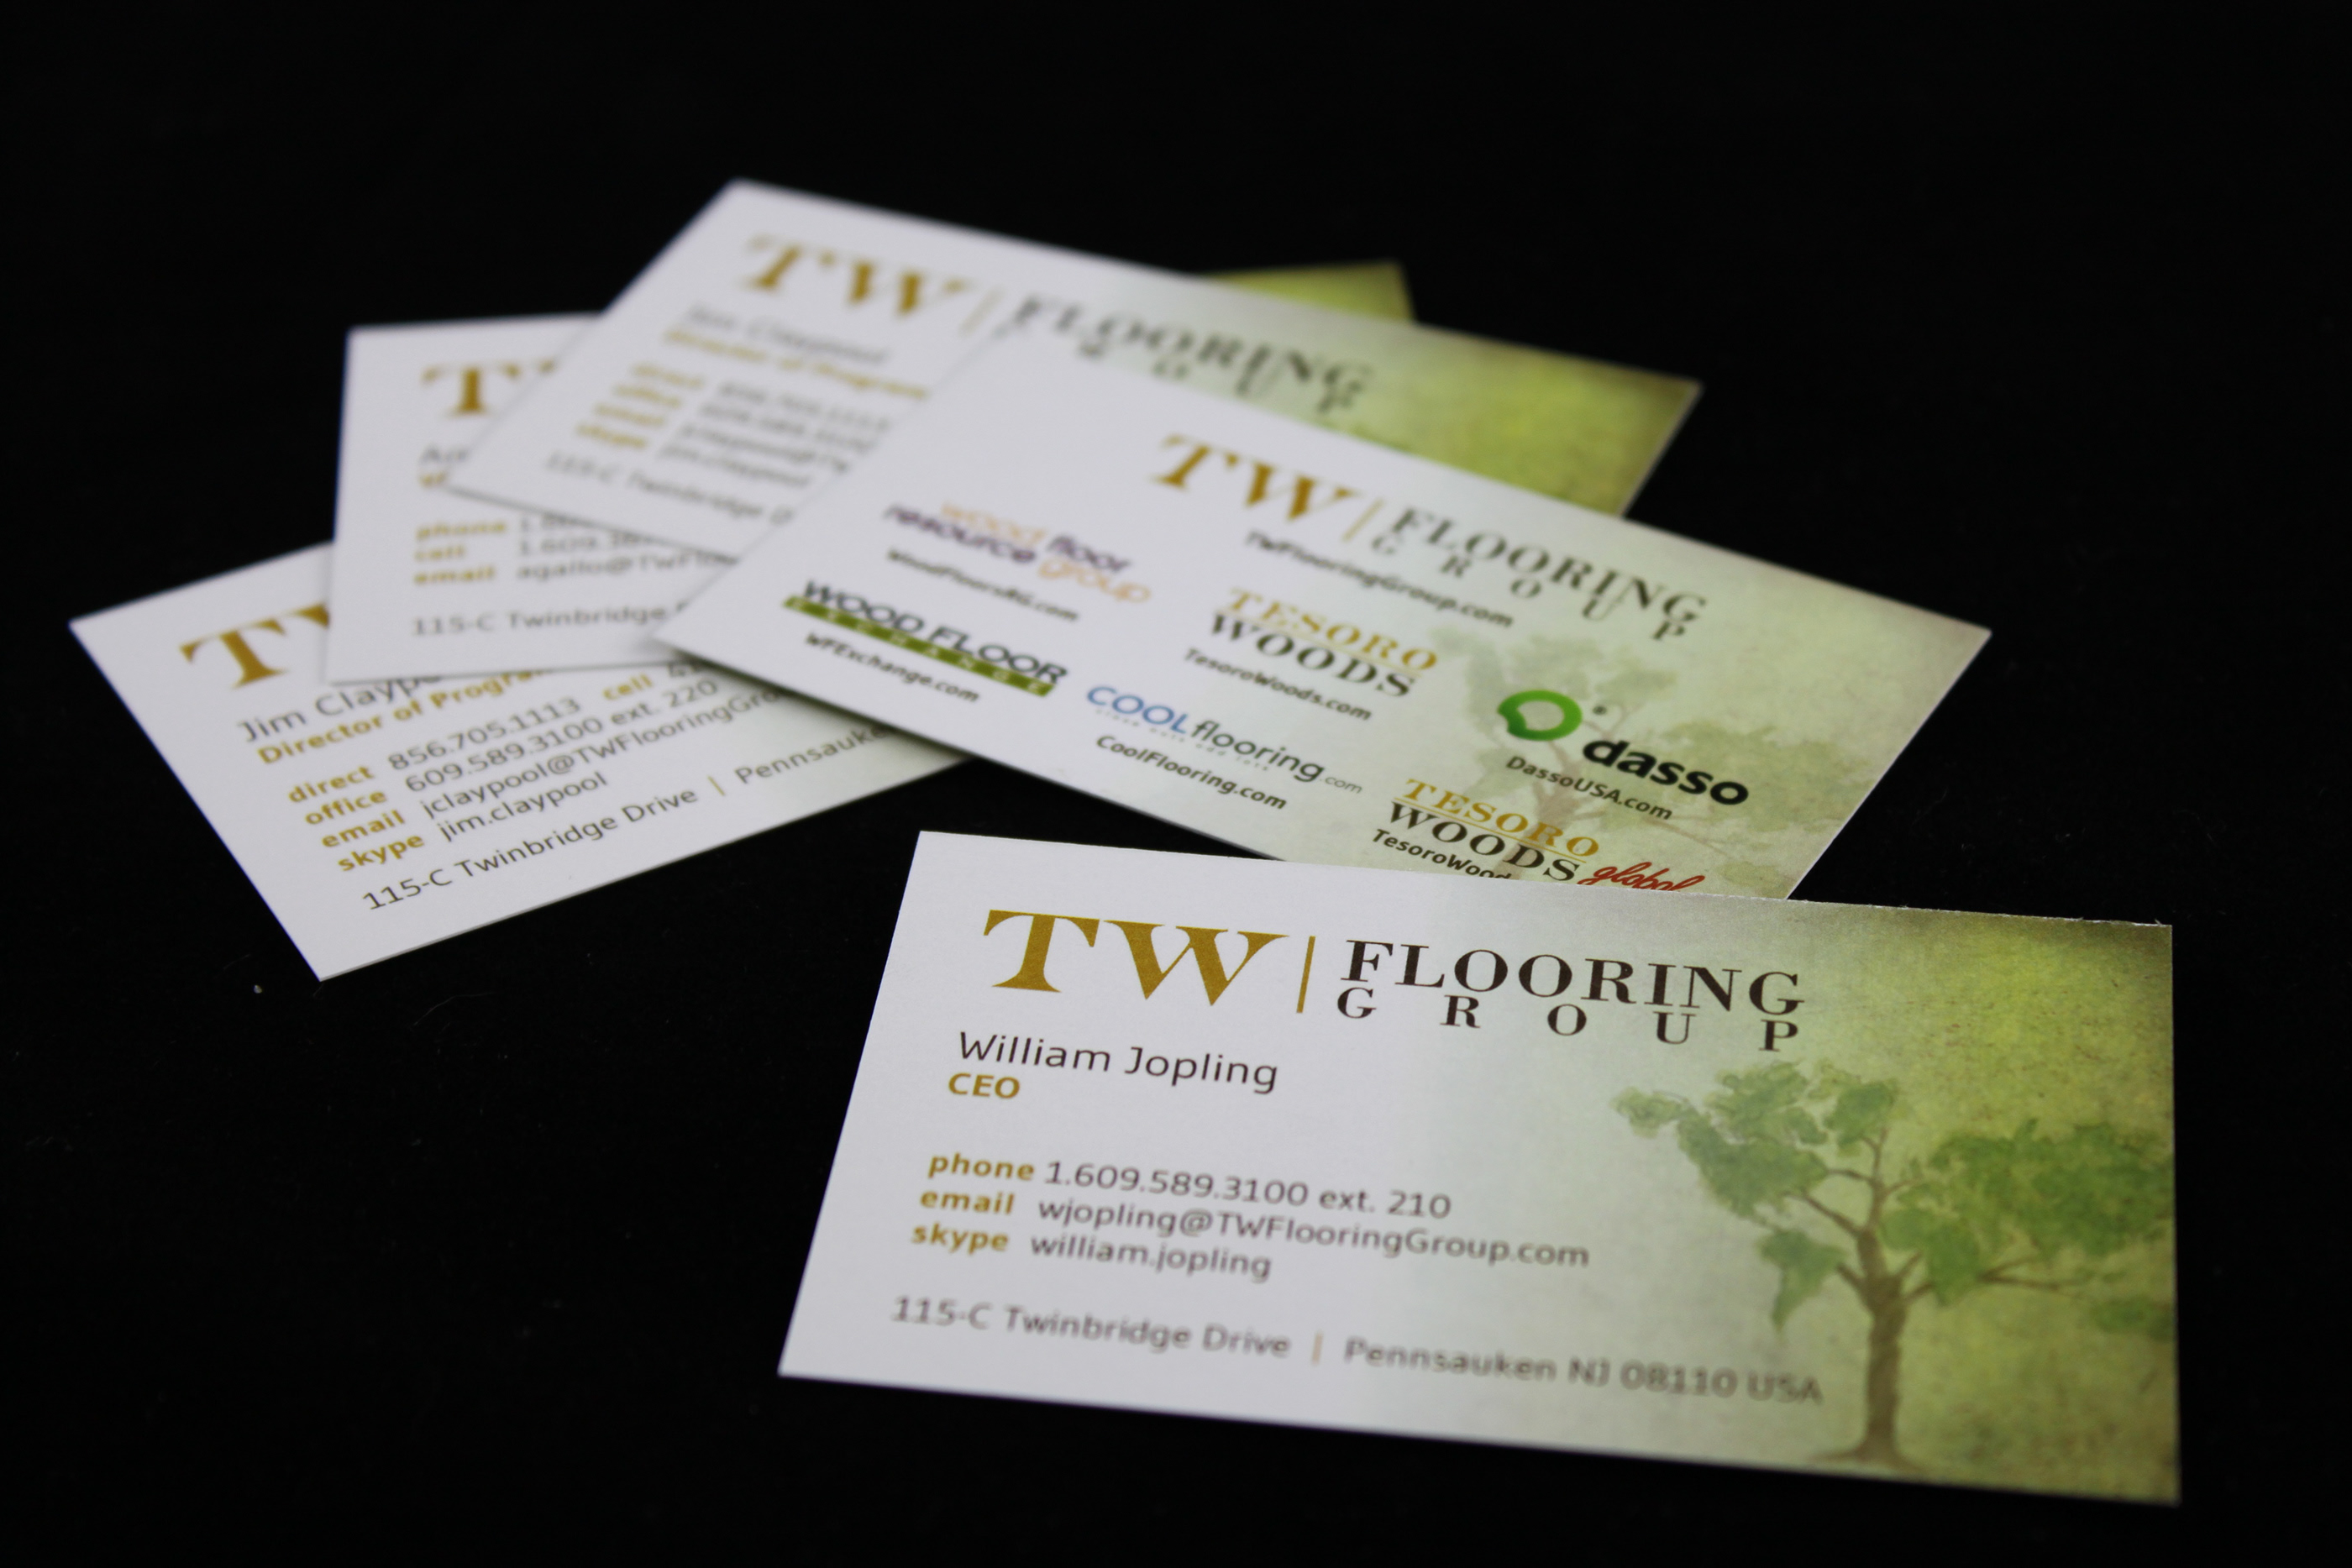 TW Flooring Group Branding Package